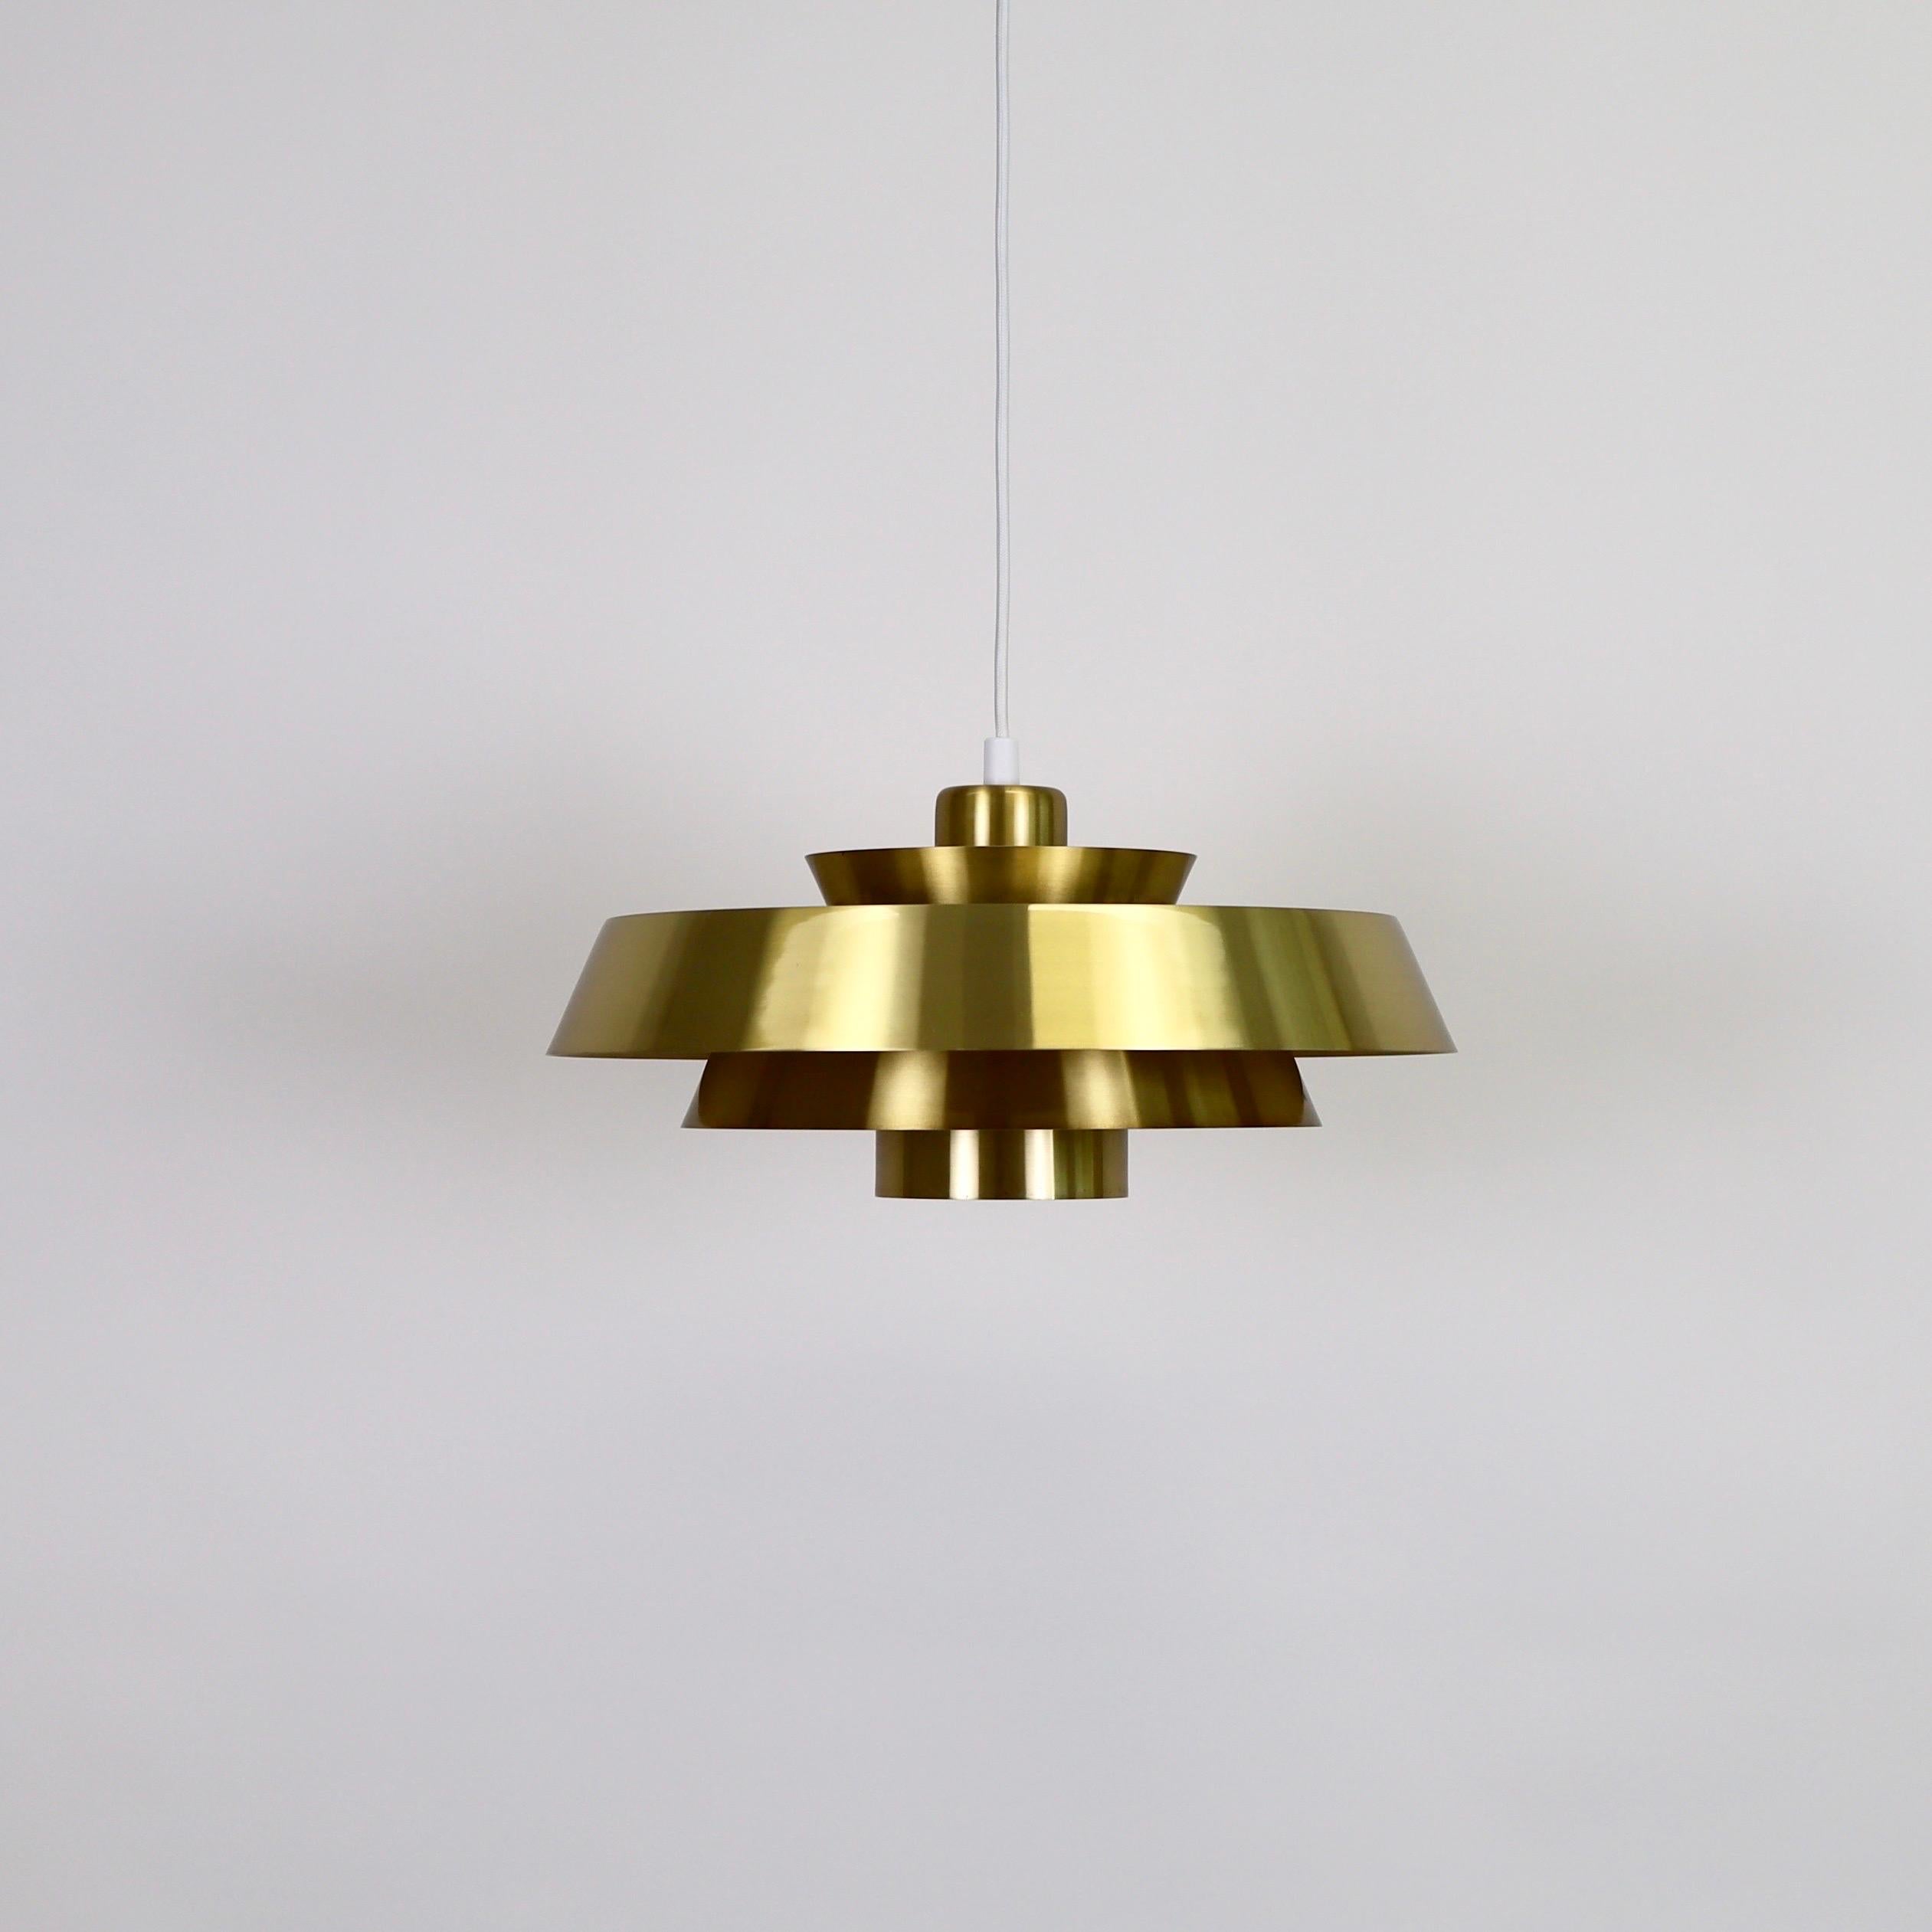 Danish Brass Nova Pendant Light by Jo Hammerborg for Fog & Morup, 1960s, Denmark